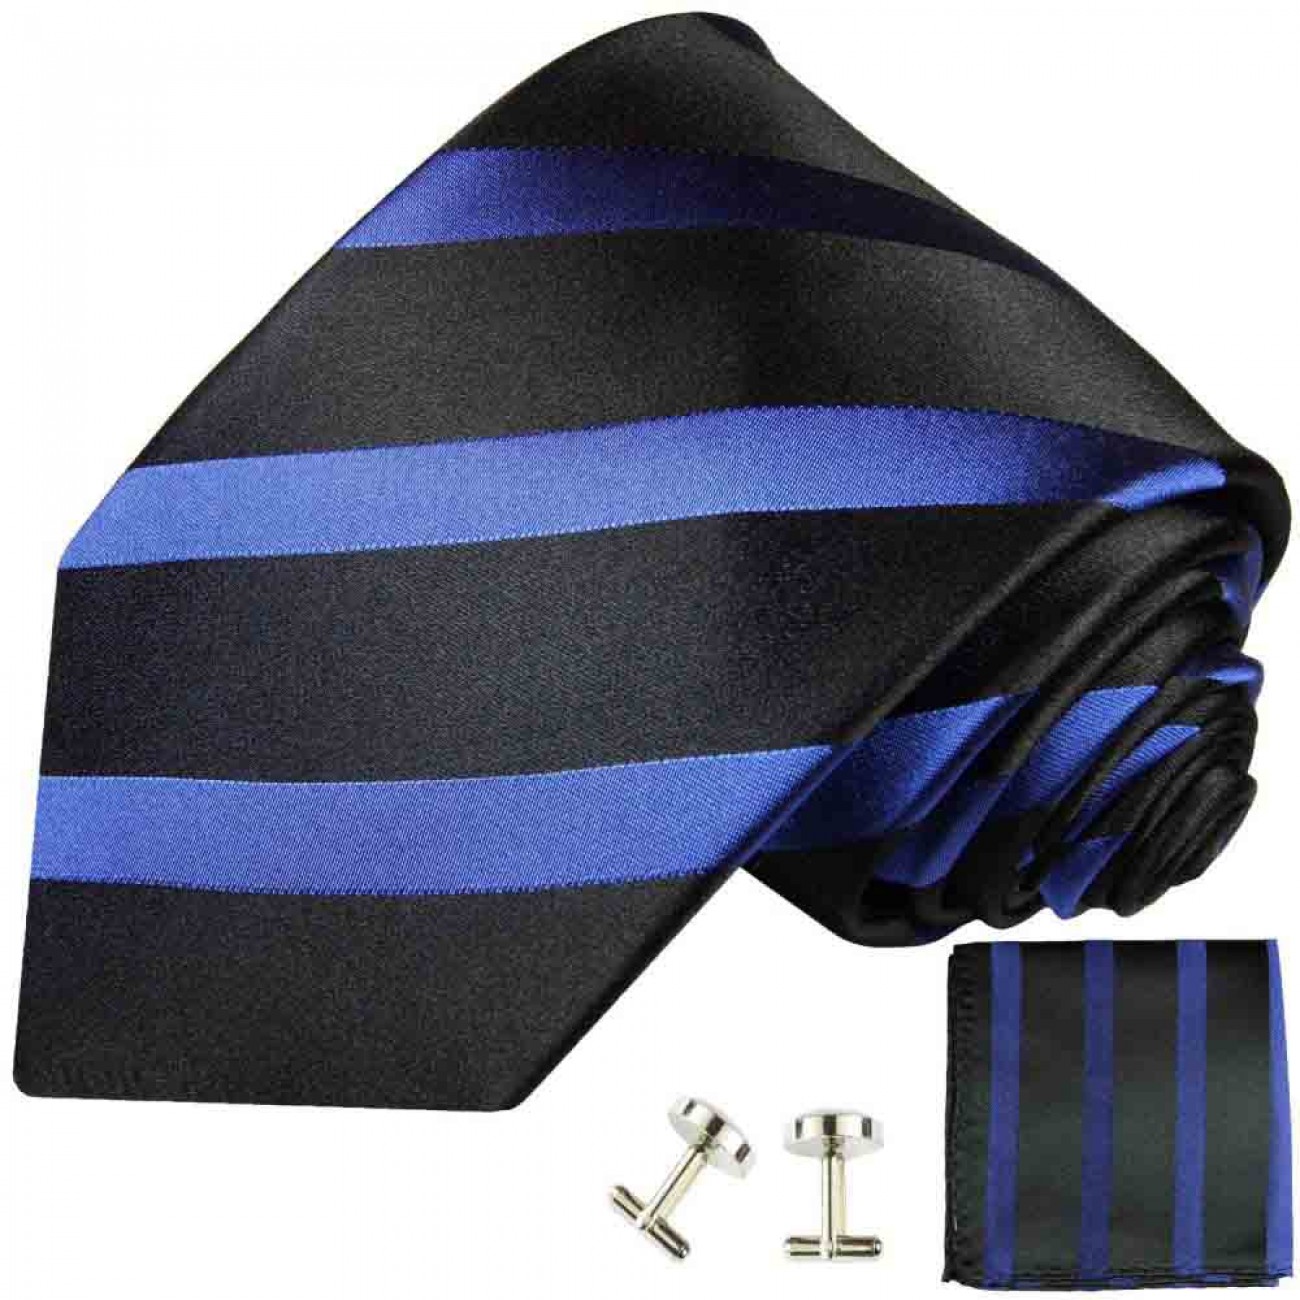 Krawatte blau schwarz gestreift Seidenkrawatte - Seide - Krawatte mit Einstecktuch und Manschettenknöpfe